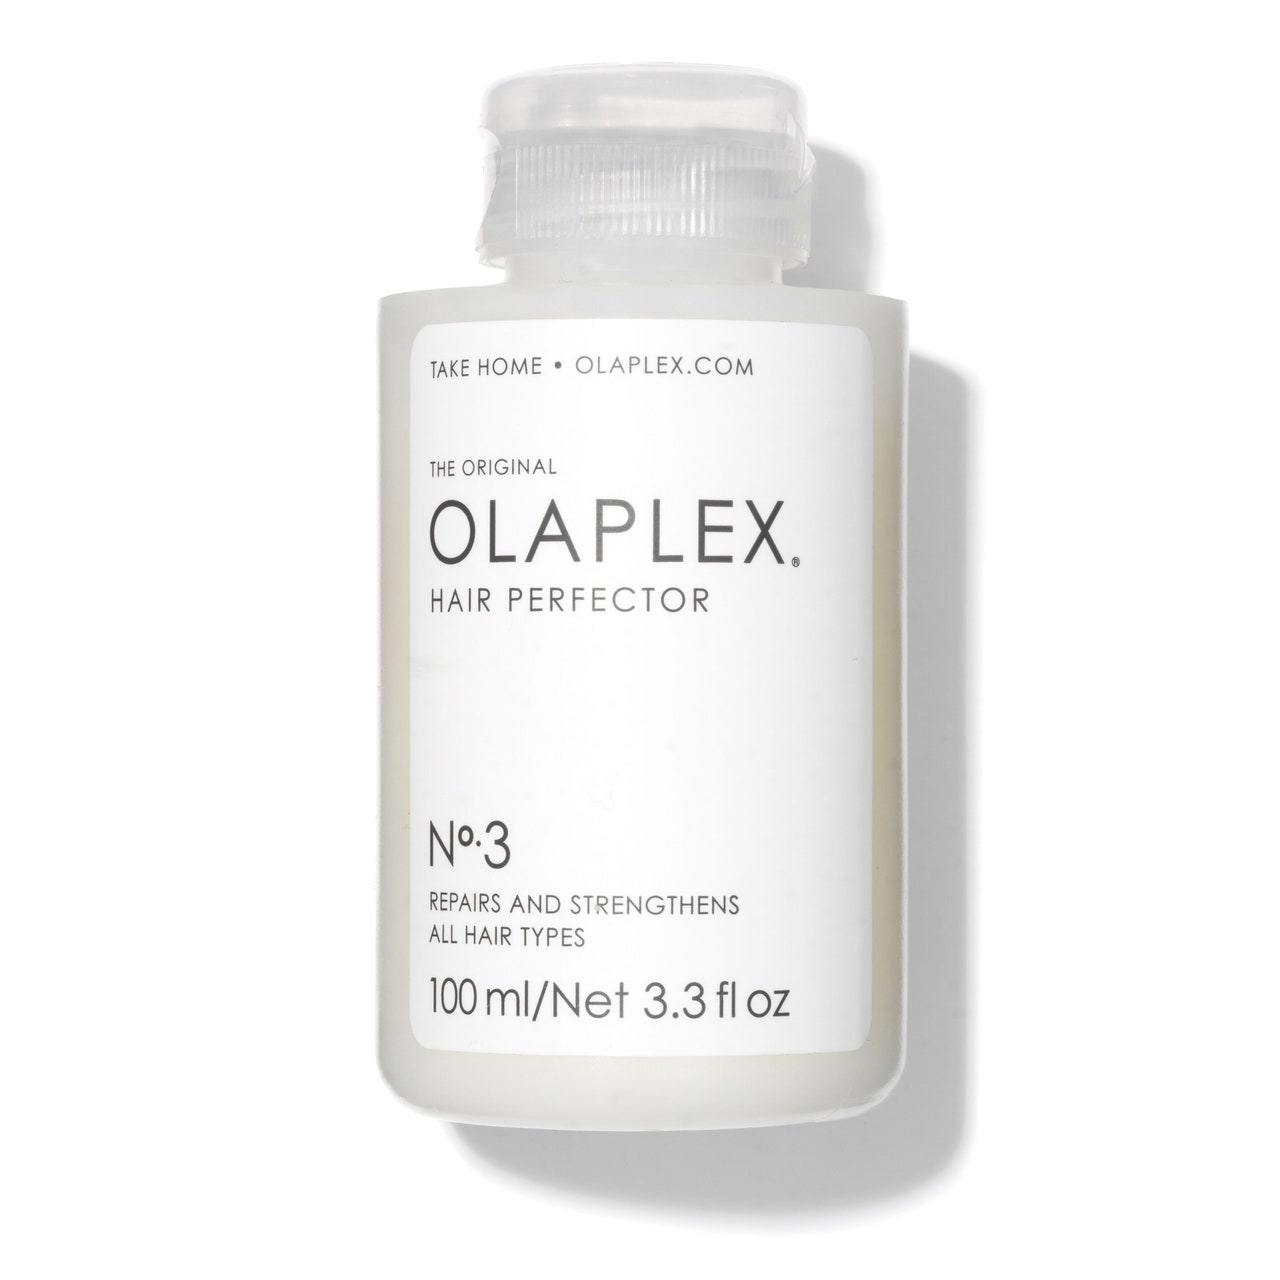 Olaplex No. 3 Hair Perfector on white background